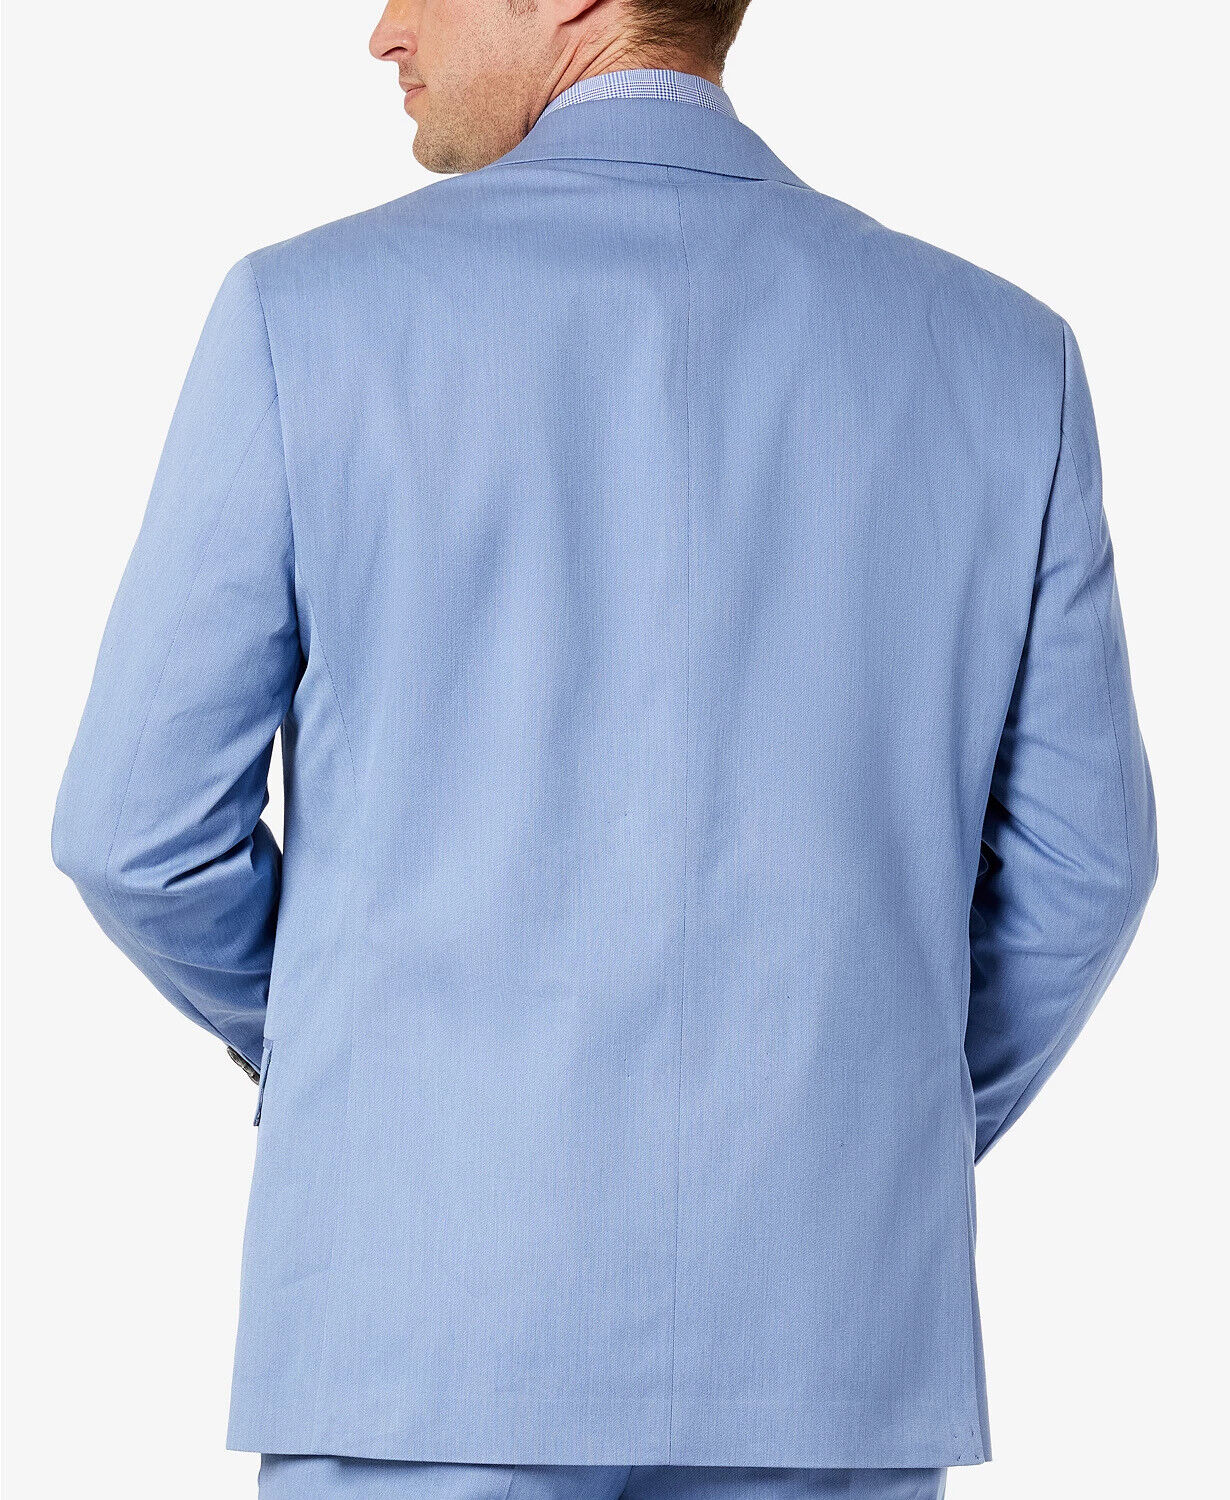 Sean John Men's Classic-Fit Solid Suit Jacket Light Blue 38S Two Button